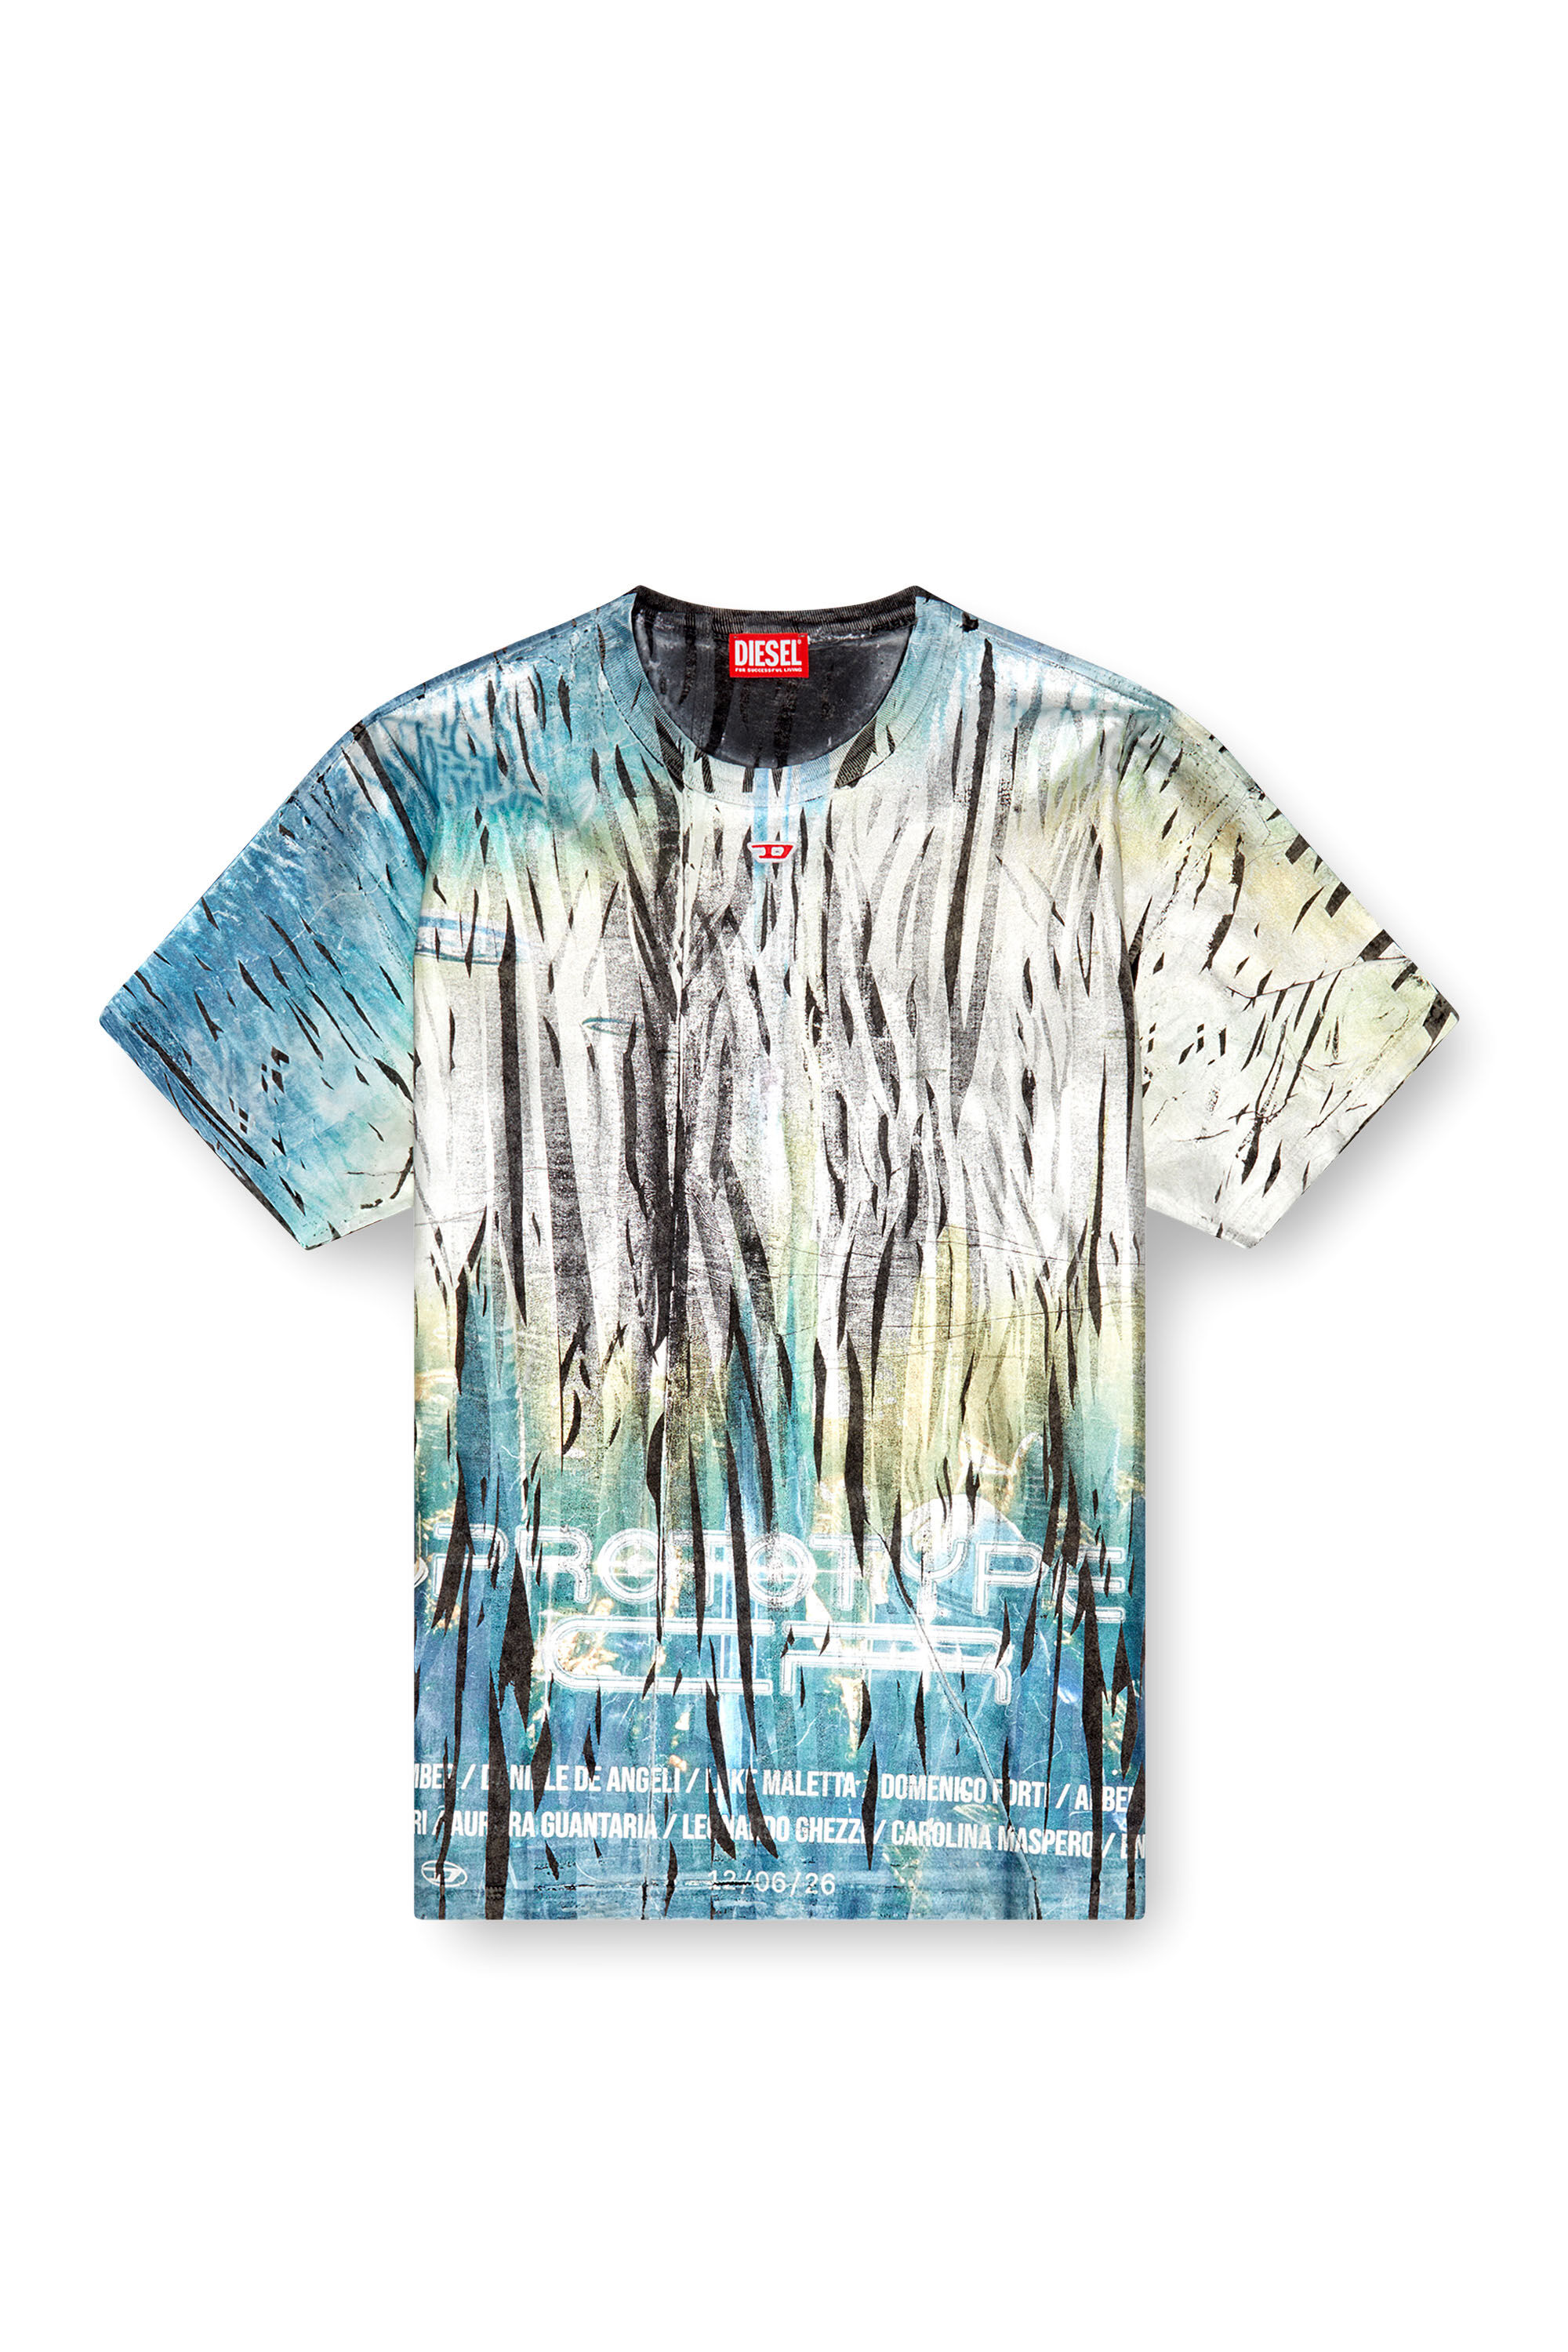 Diesel - T-BORD-Q1, Uomo T-shirt con trattamento laminato stropicciato in Multicolor - Image 2